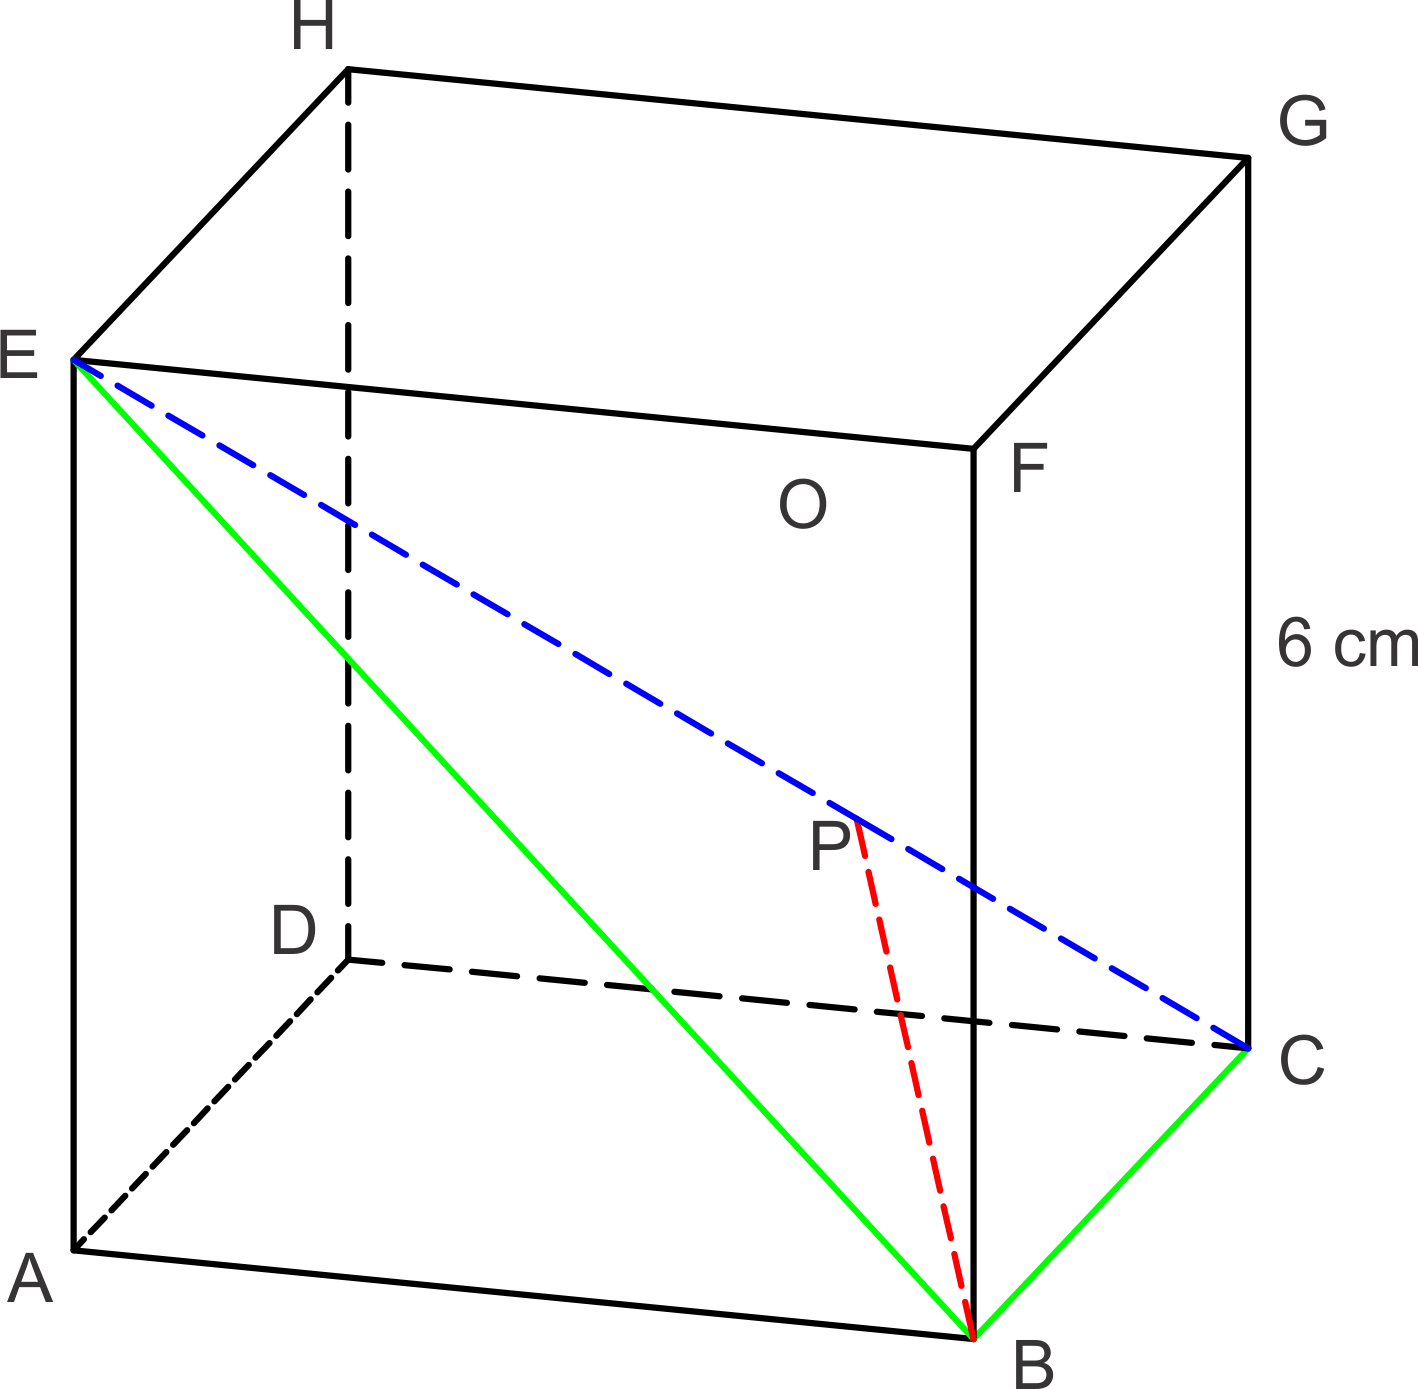 Besar sudut yang terbentuk antara garis bc dan fh pada kubus abcd.efgh adalah